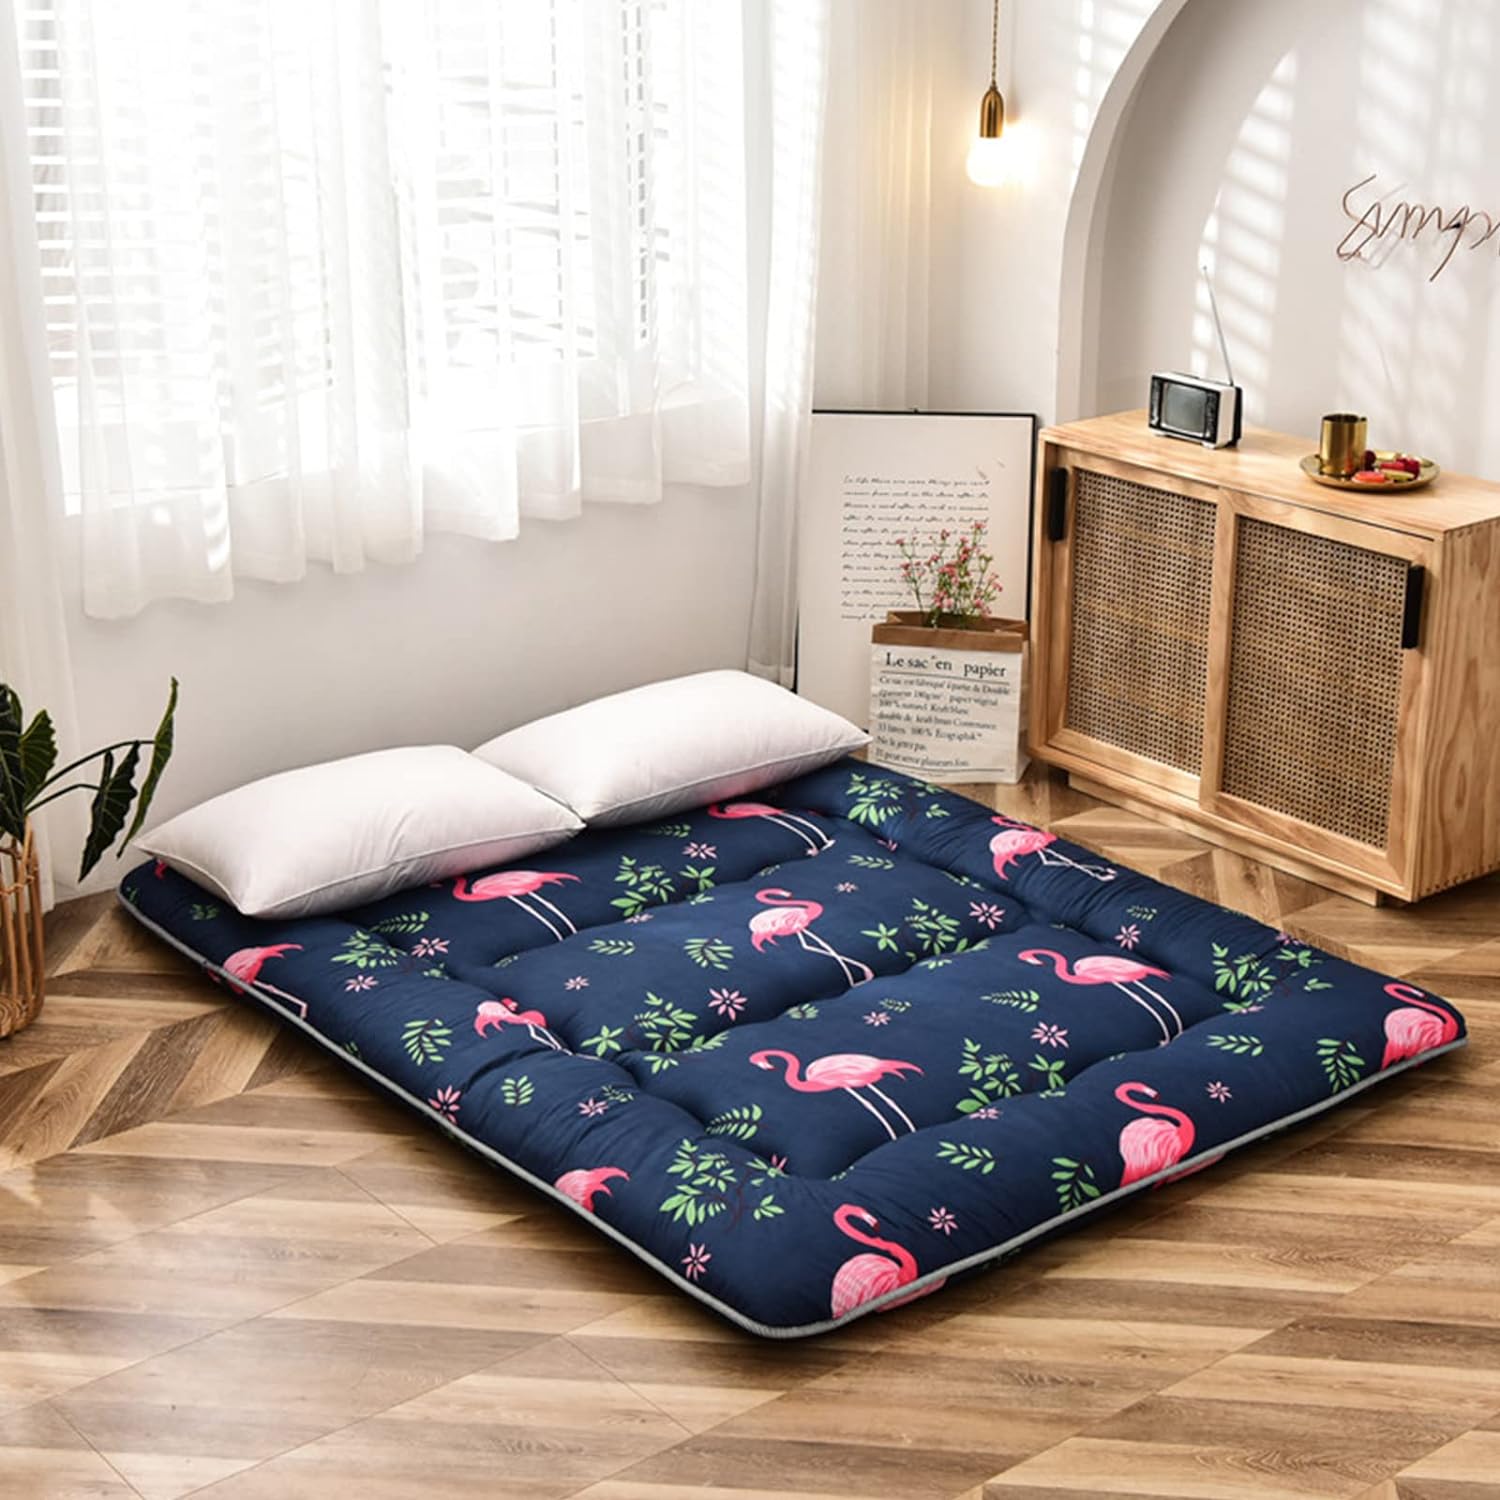 Colchón de futón japonés flamenco para dormir, cama japonesa